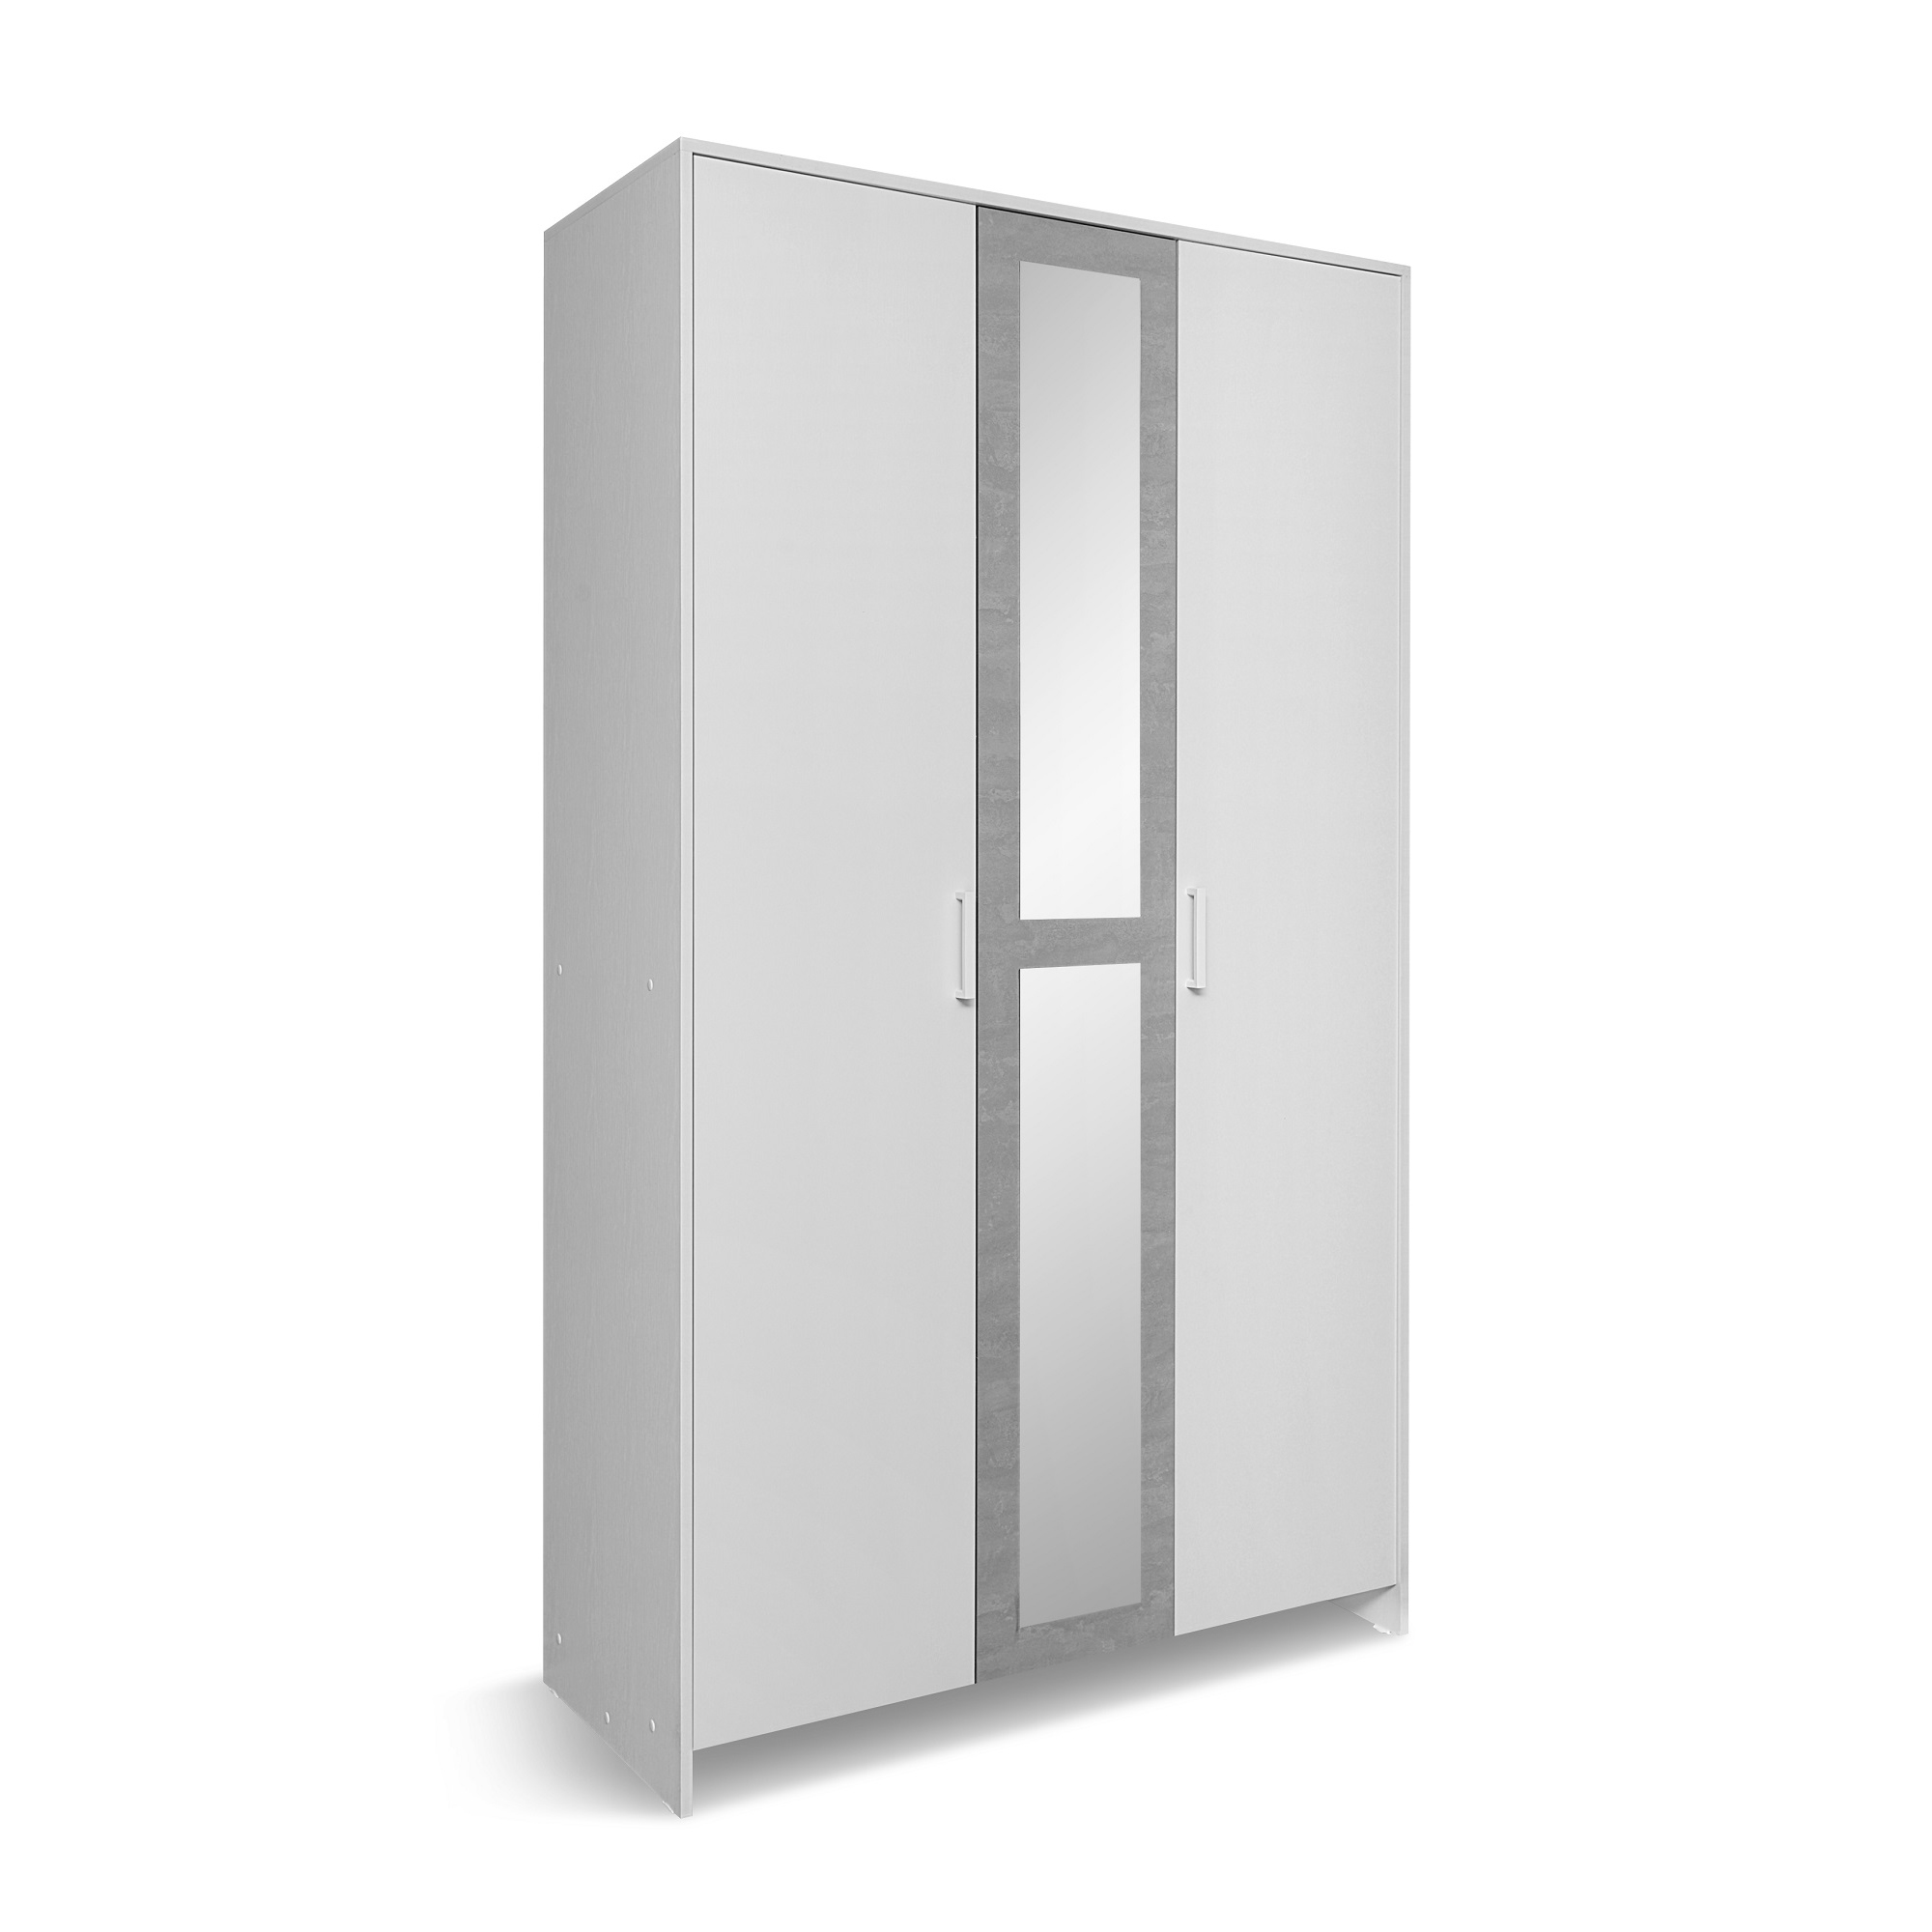 Фото сг рио шкаф 3-х дверный цвет бетонный камень  от МебельОптТорг